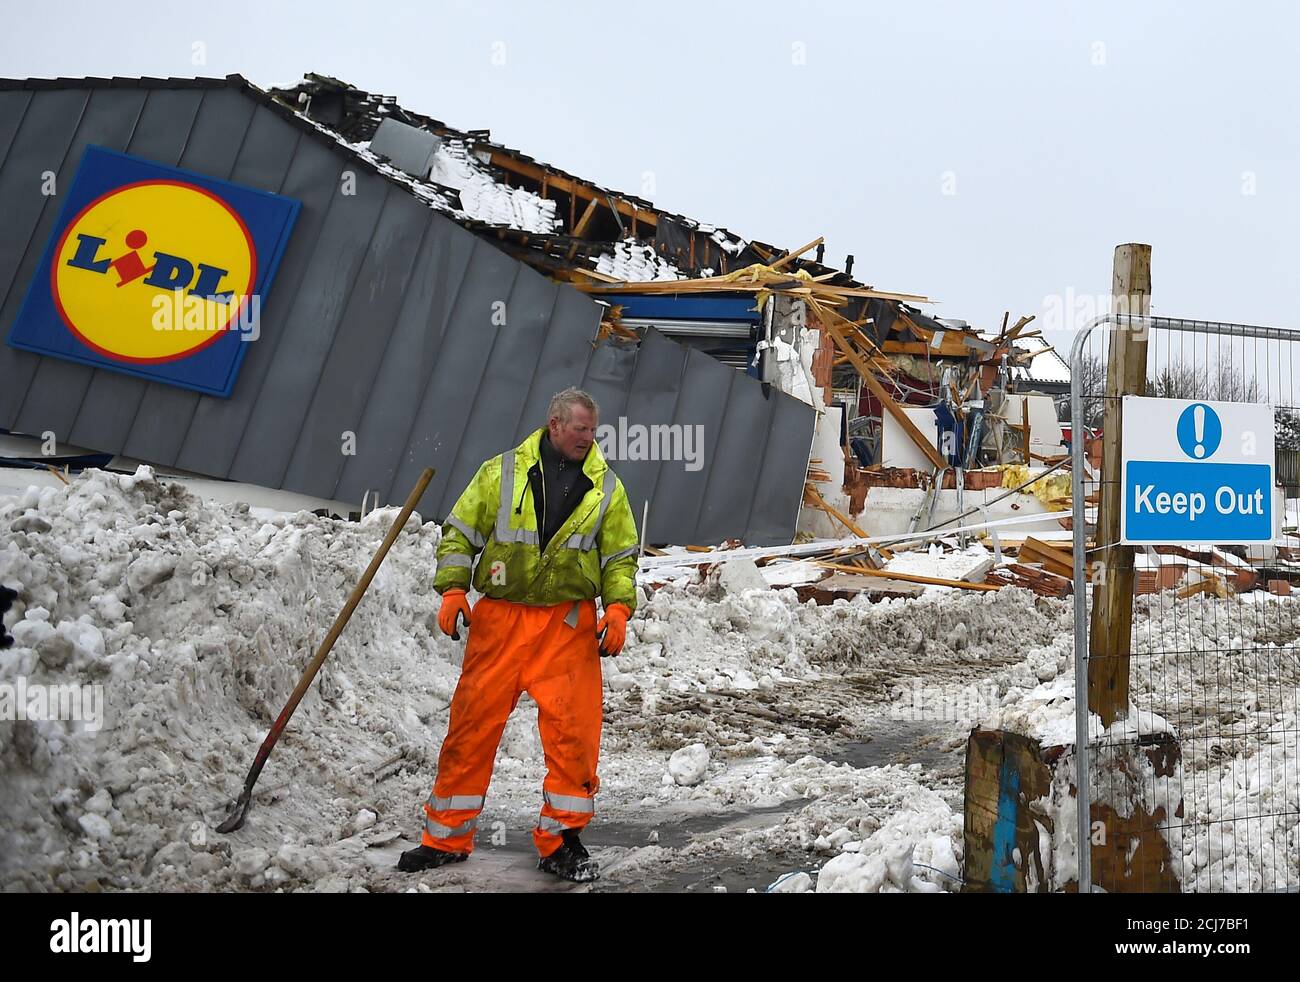 Un trabajador se encuentra frente a la escena de daños extensos hechos por los saqueadores a un supermercado Lidl en Tallaght cerca de Dublín, el 3 de marzo de 2018. REUTERS/Clodagh